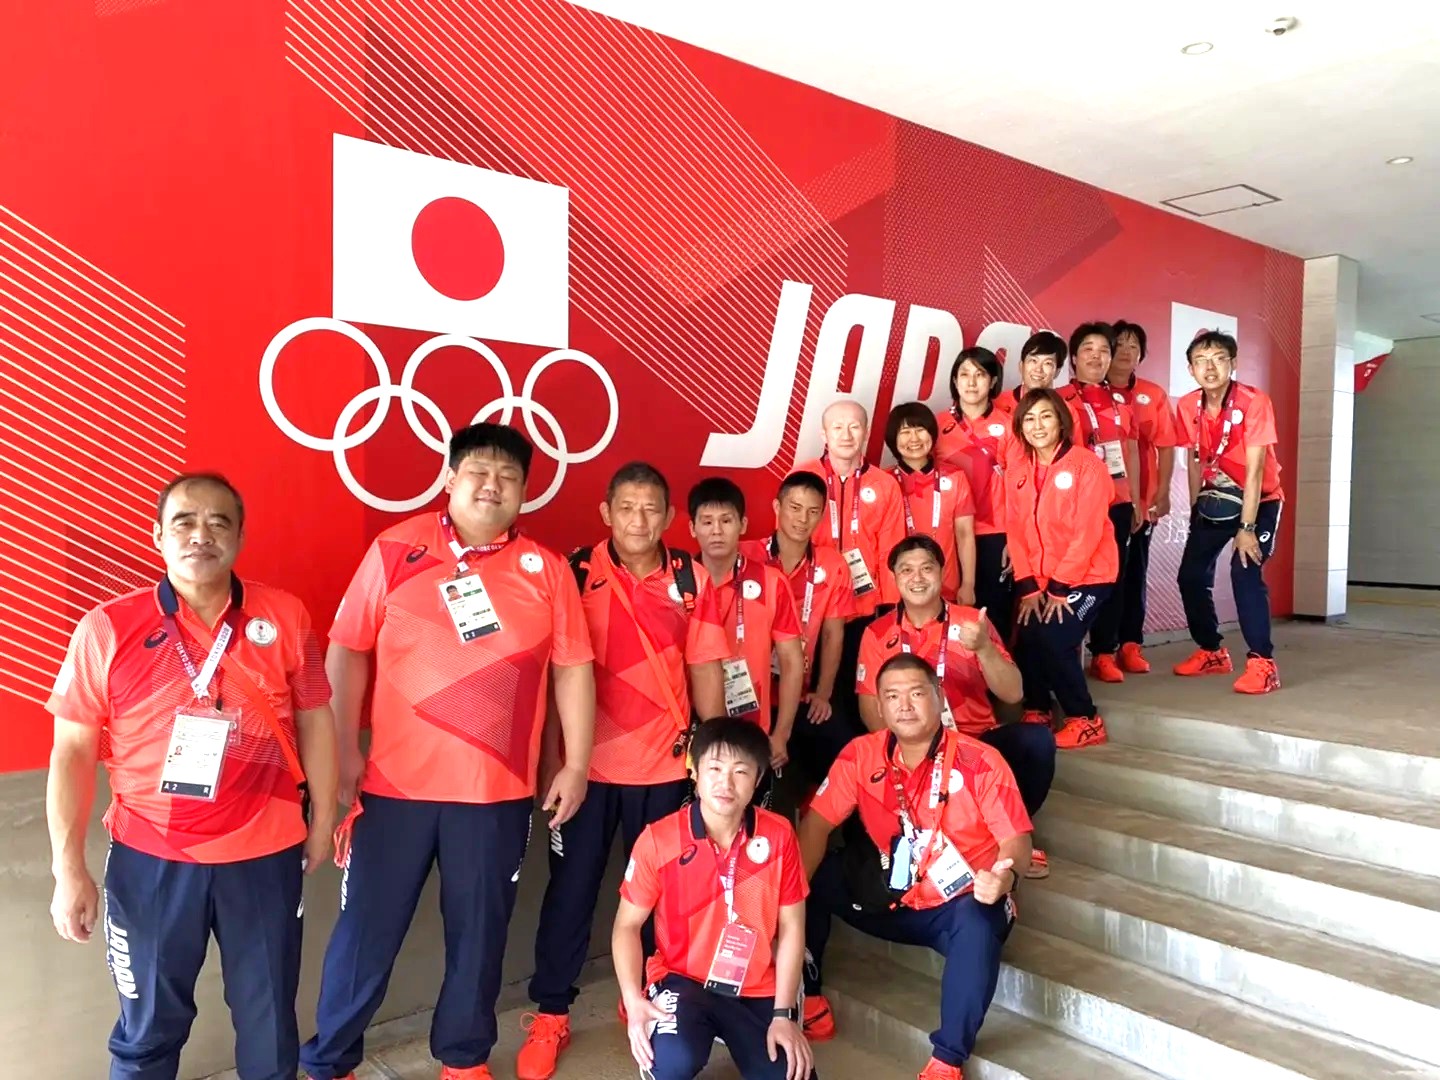 日本代表チーム選手団,東京2020パラリンピック競技大会